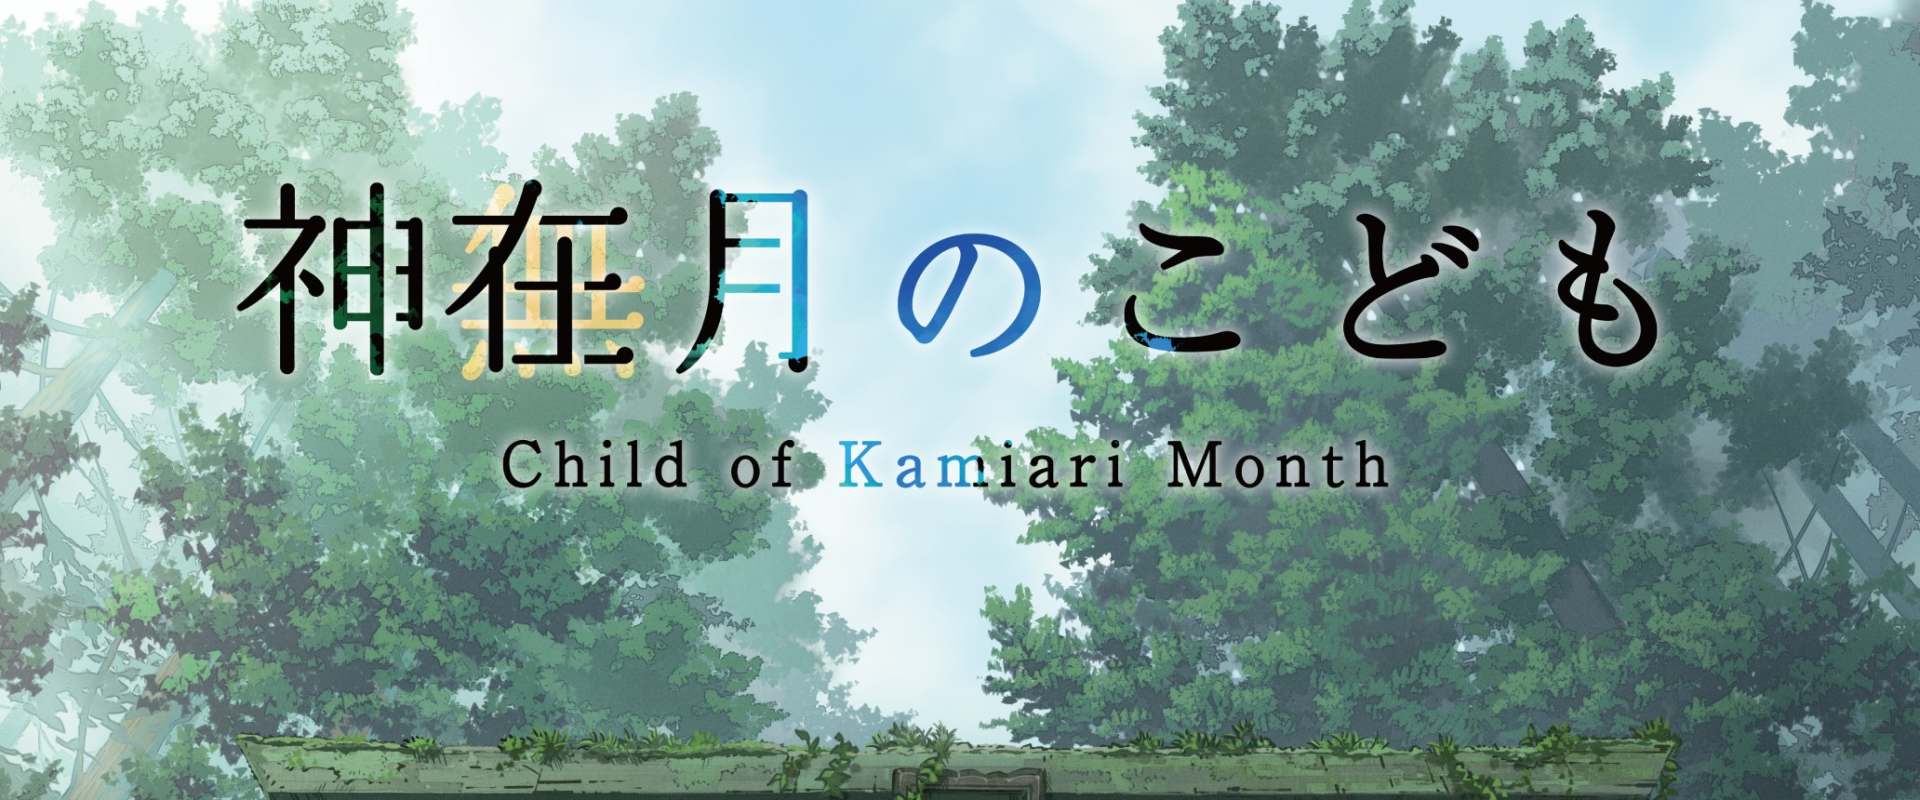 Child of Kamiari Month background 2